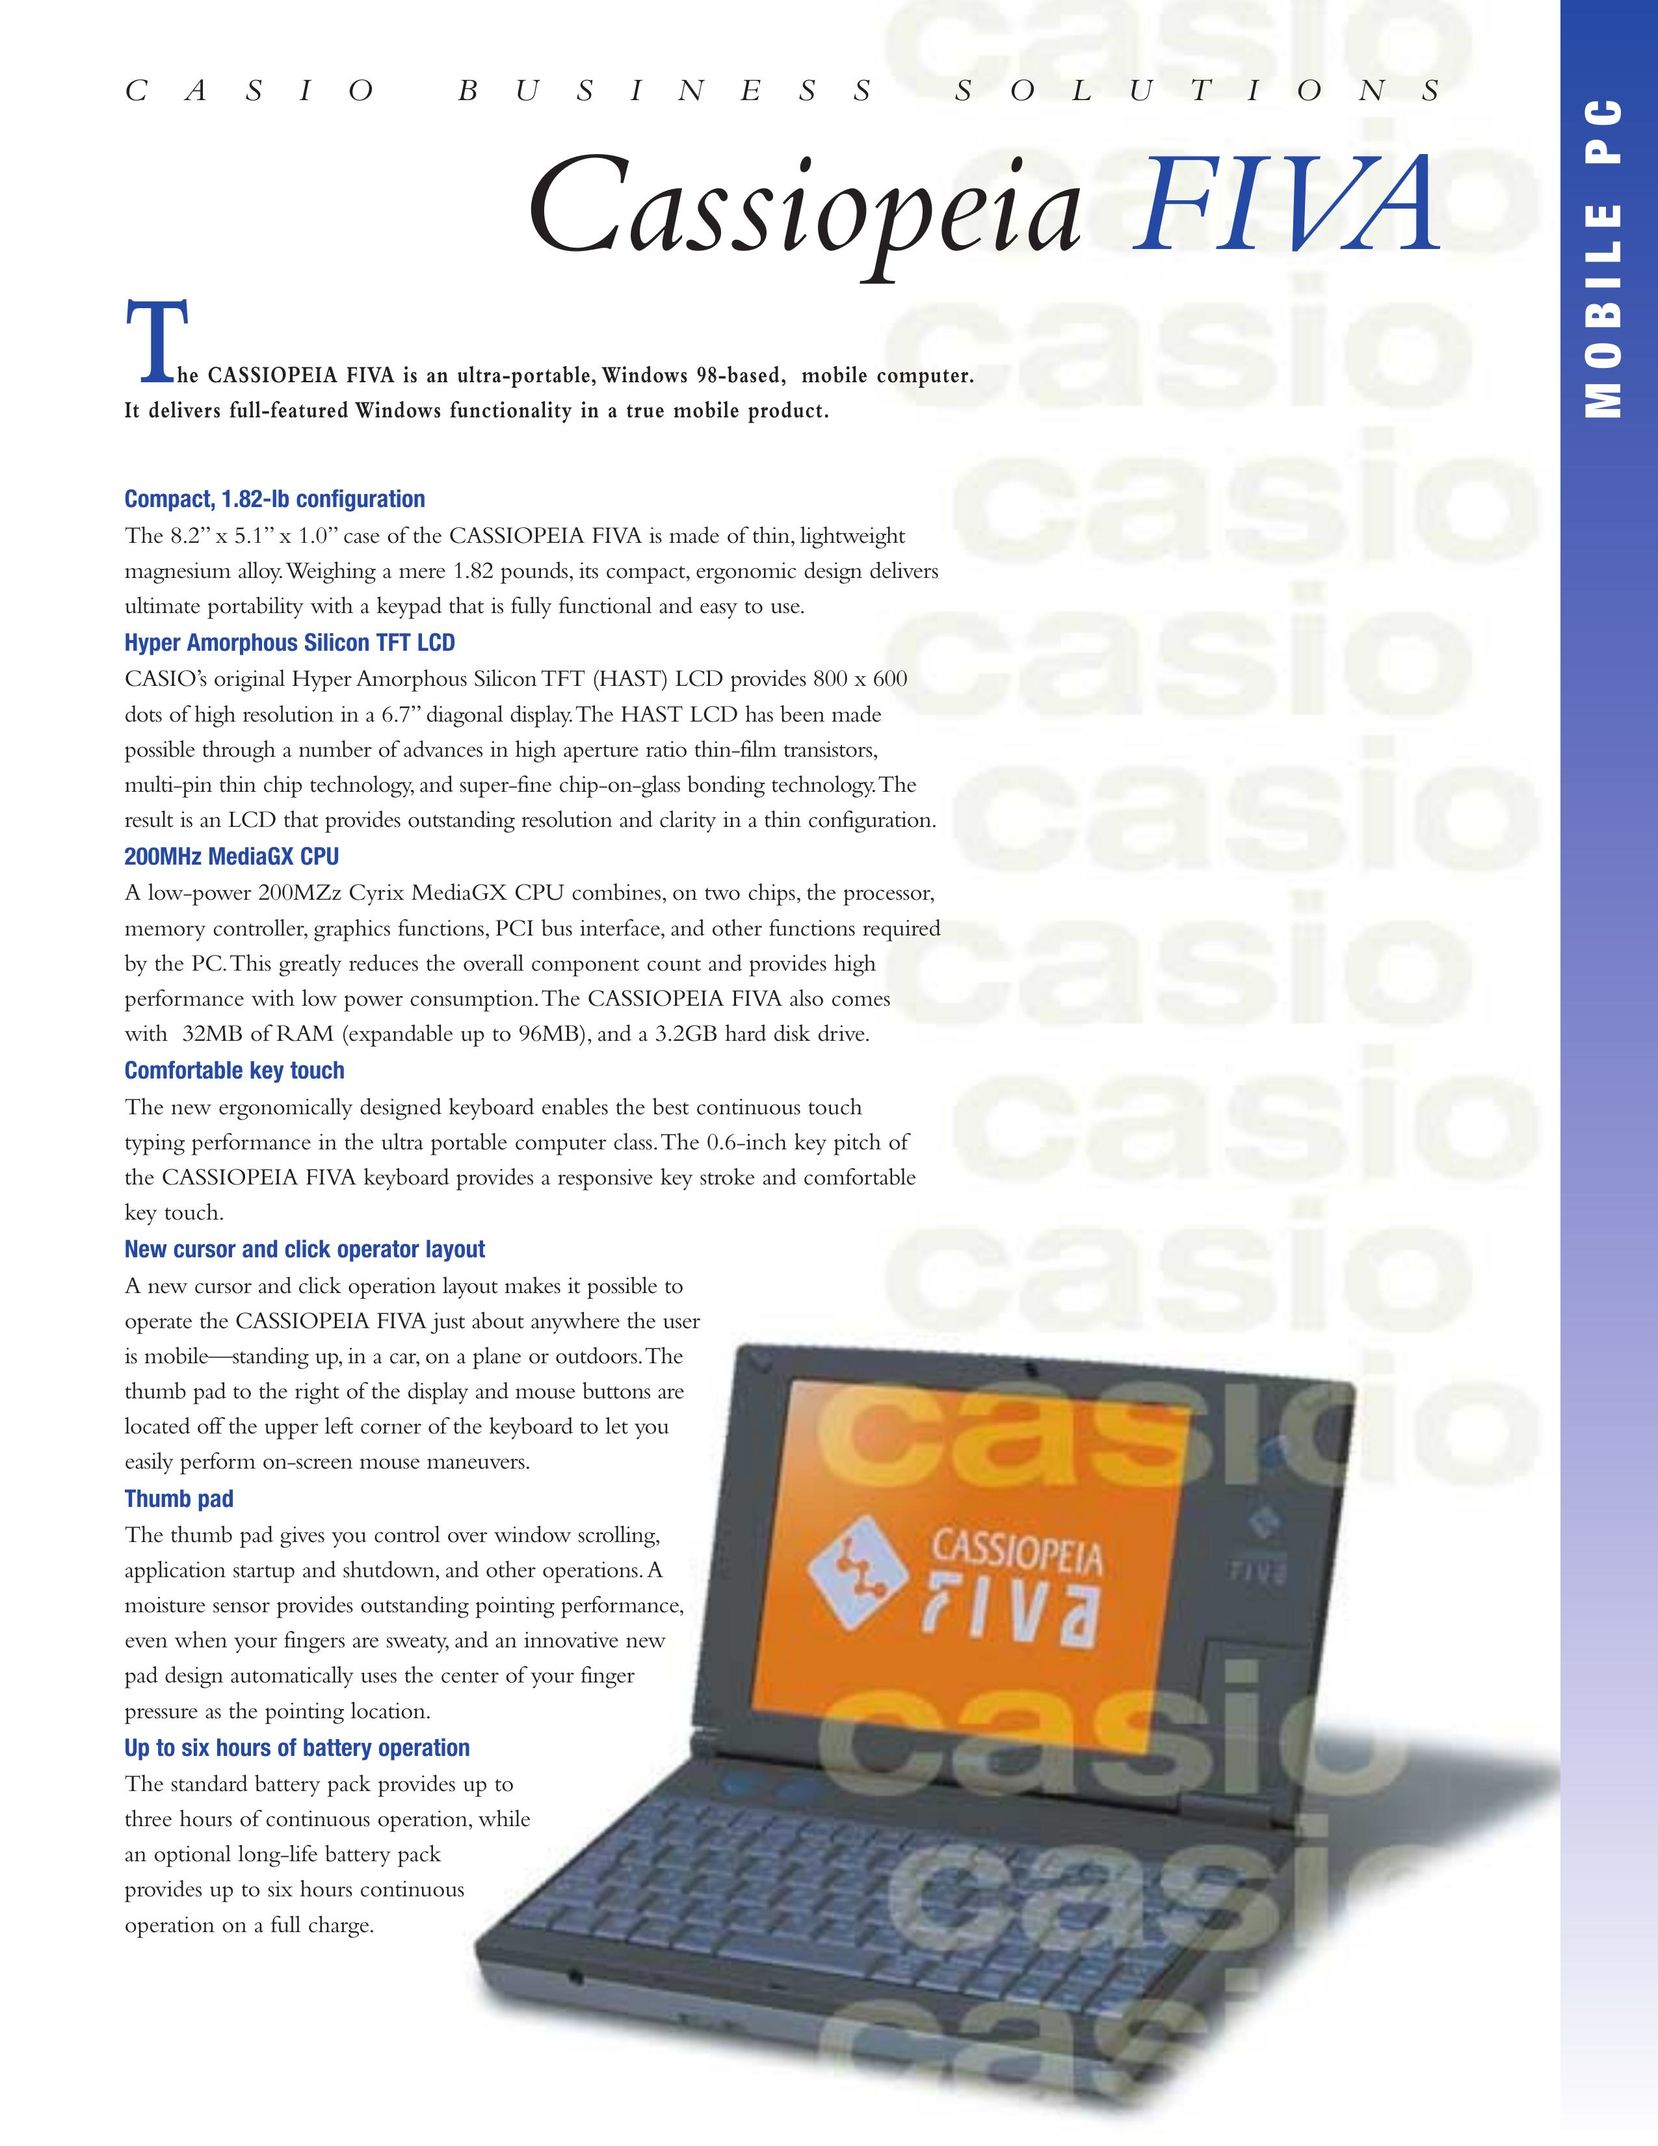 Casio FIVA Laptop User Manual